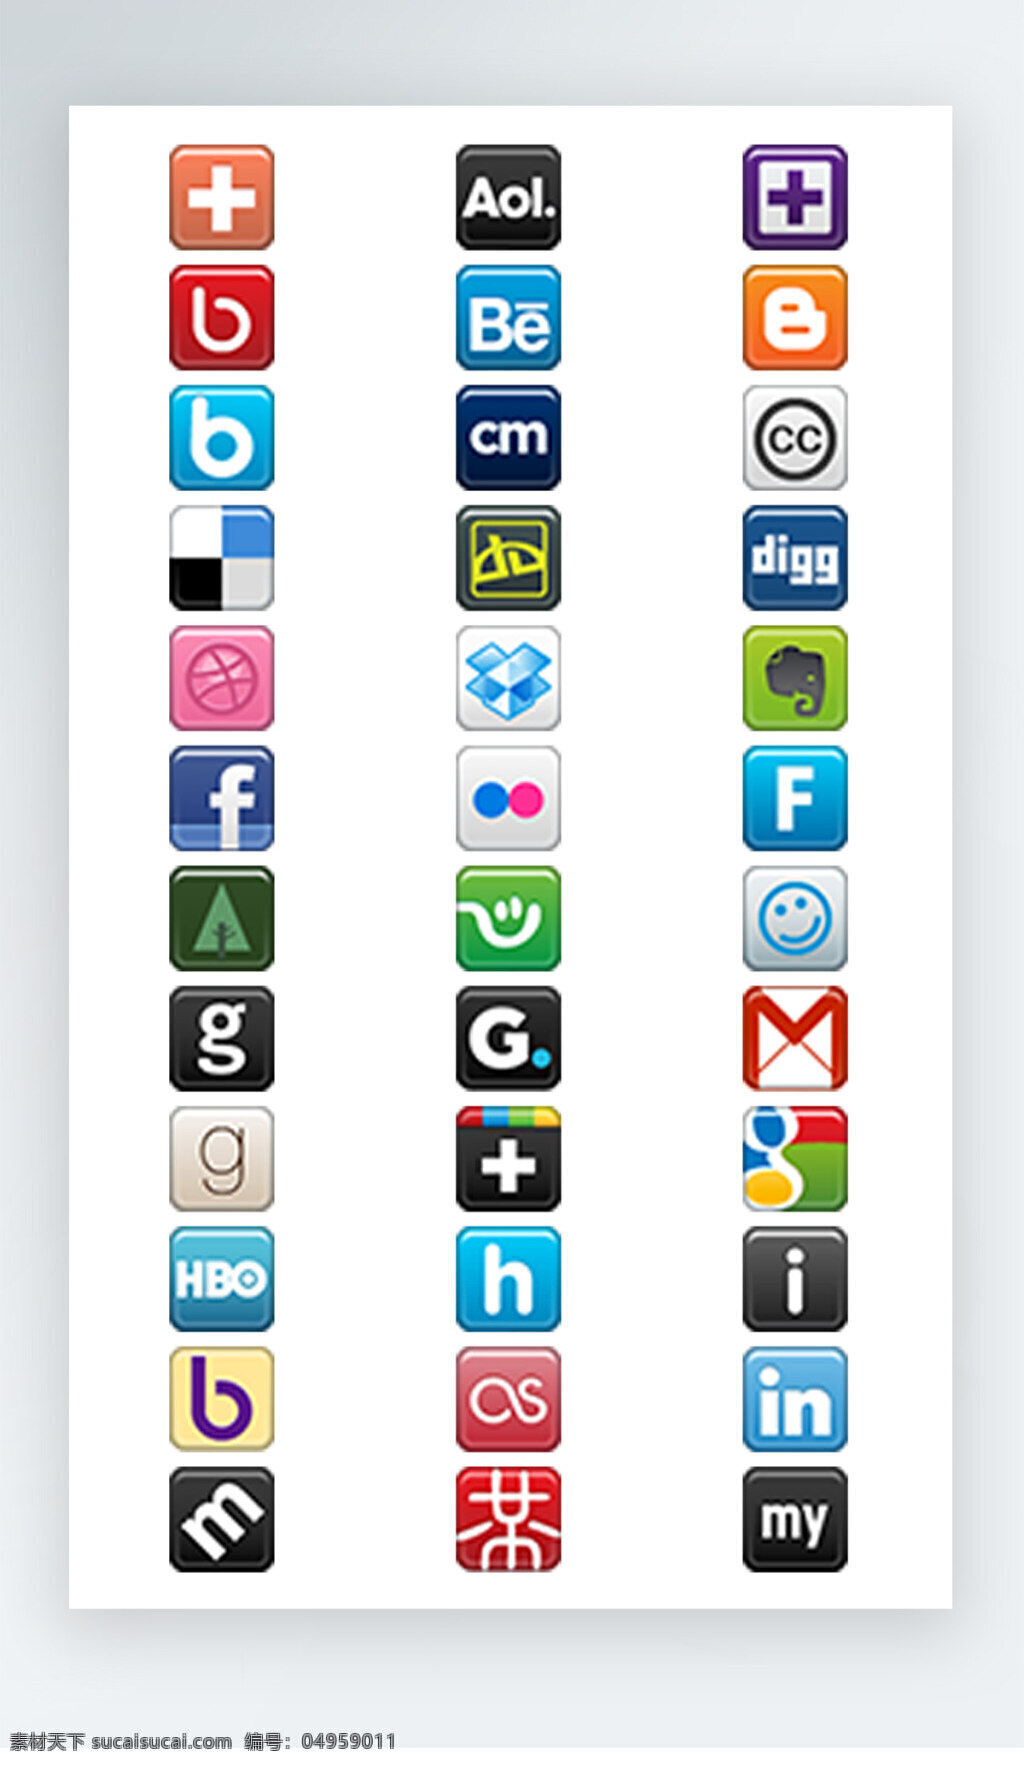 软件 图标 彩色 写实 iconpng 软件图标 彩色写实图标 icon f 邮件 谷歌